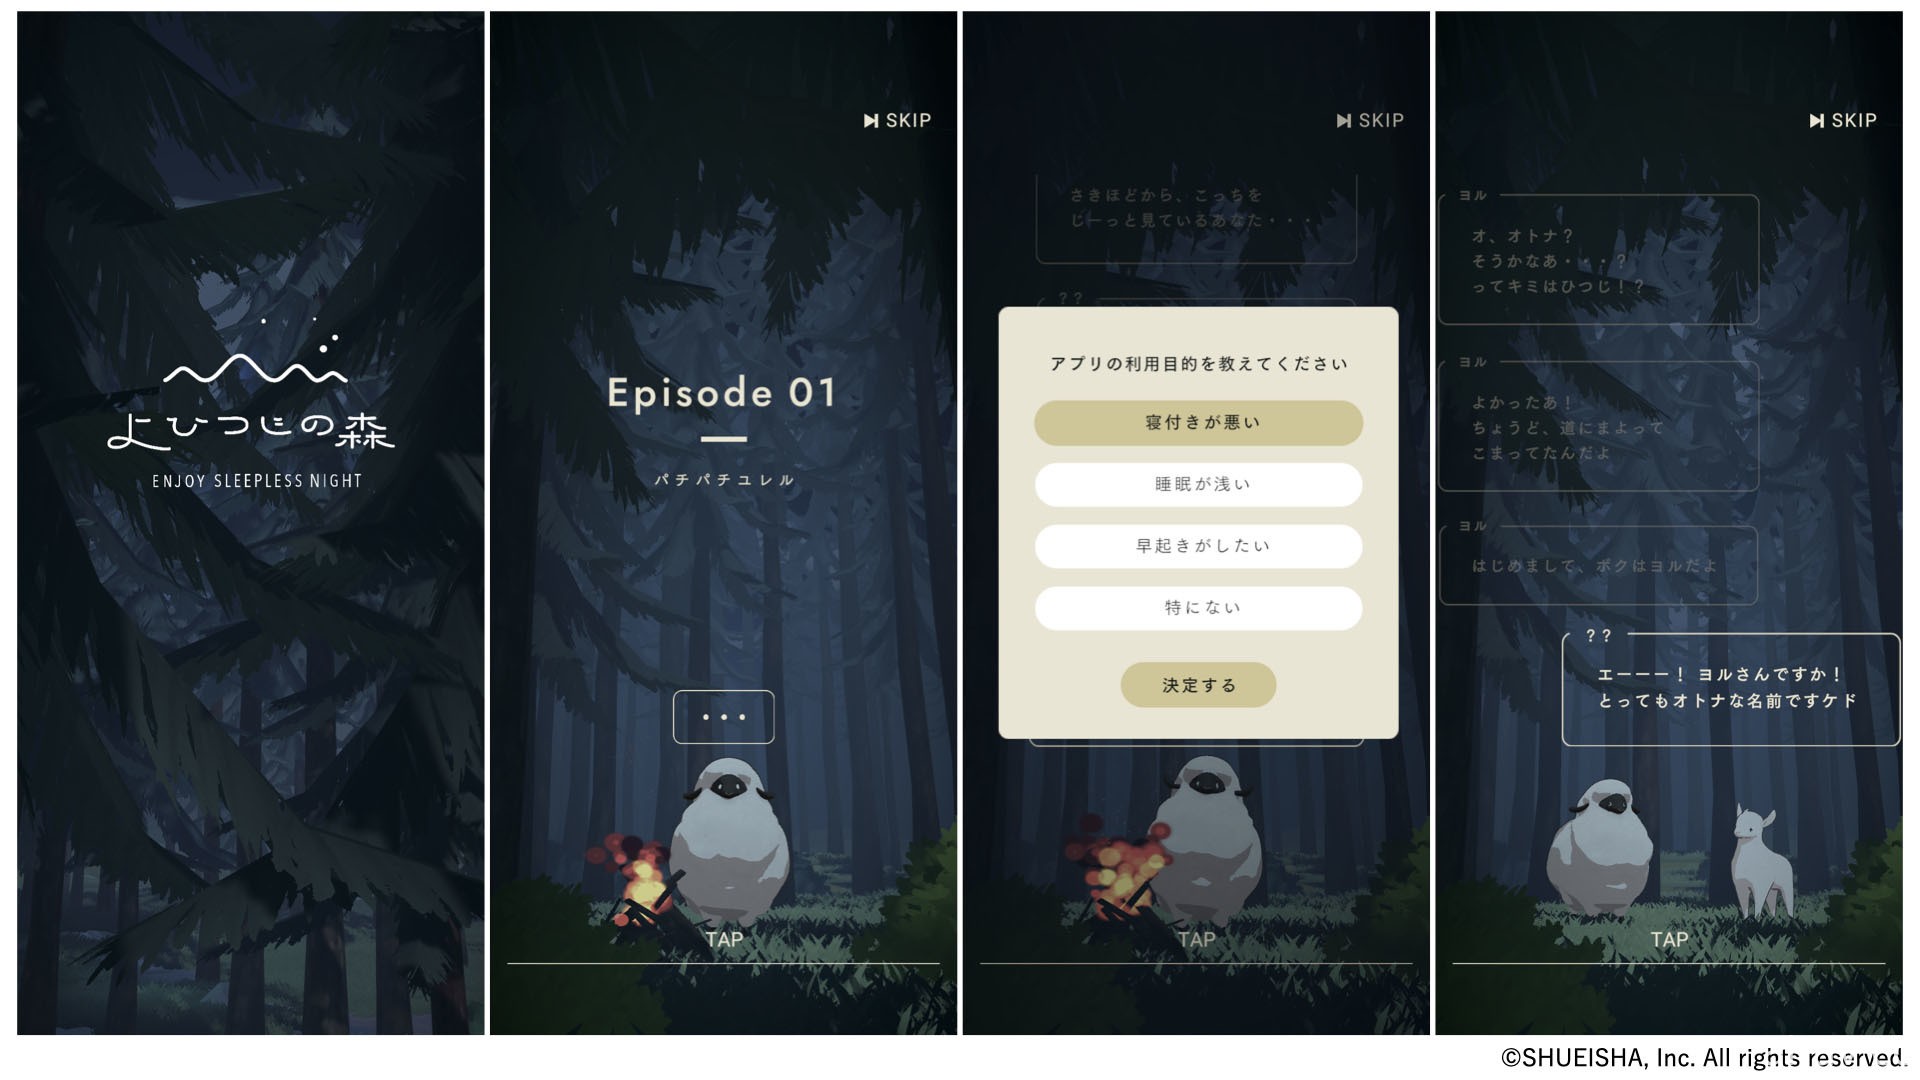 《夜羊之森》在日推出 入睡后能解锁全新故事的睡眠纪录 App